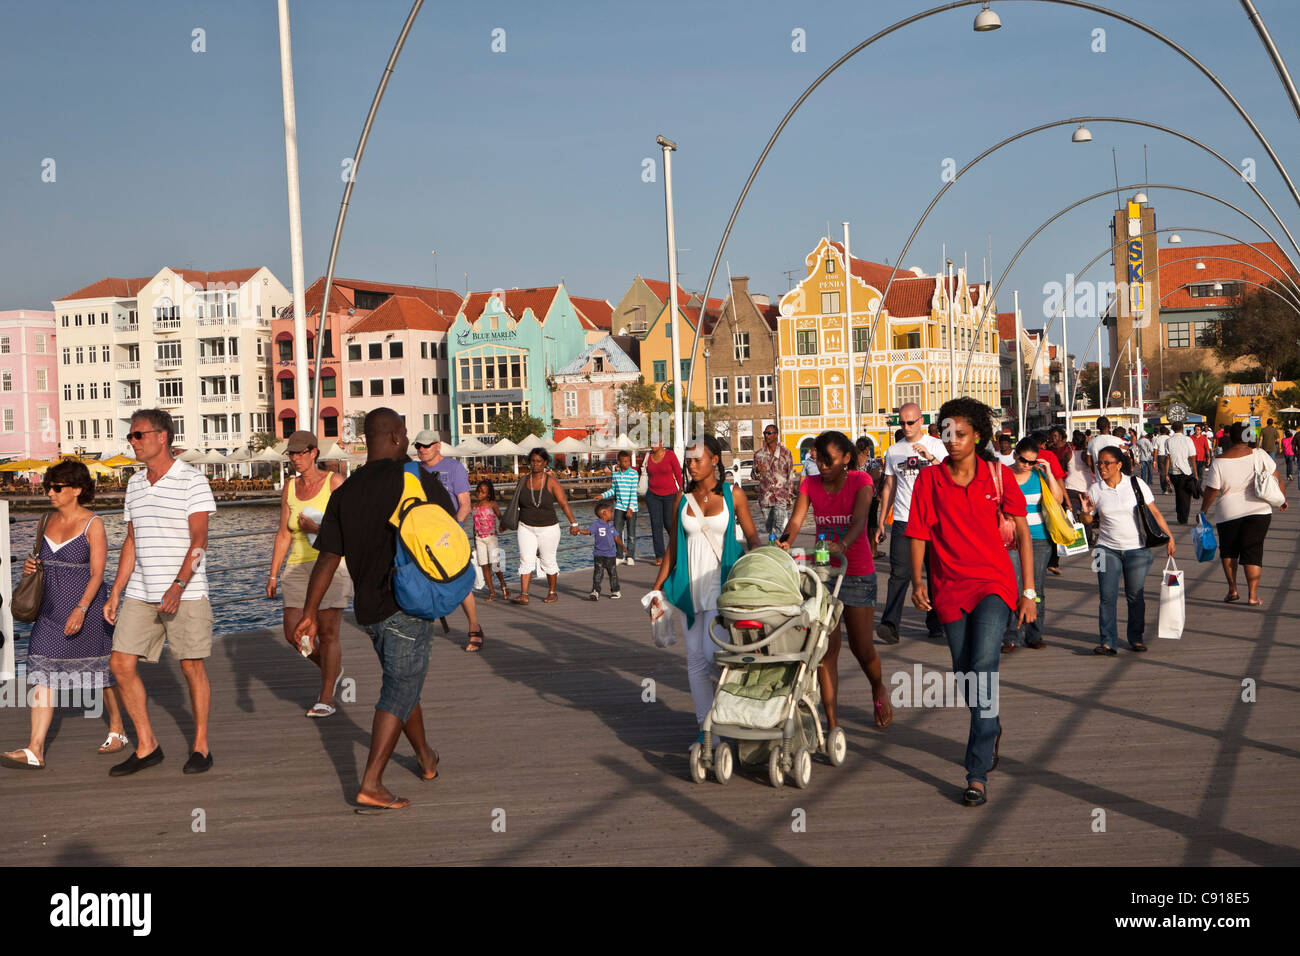 Curaçao, Karibik-Insel, Niederlande Willemstad. Punda Viertel. Historische Häuser. Menschen über Emma-Brücke. Stockfoto